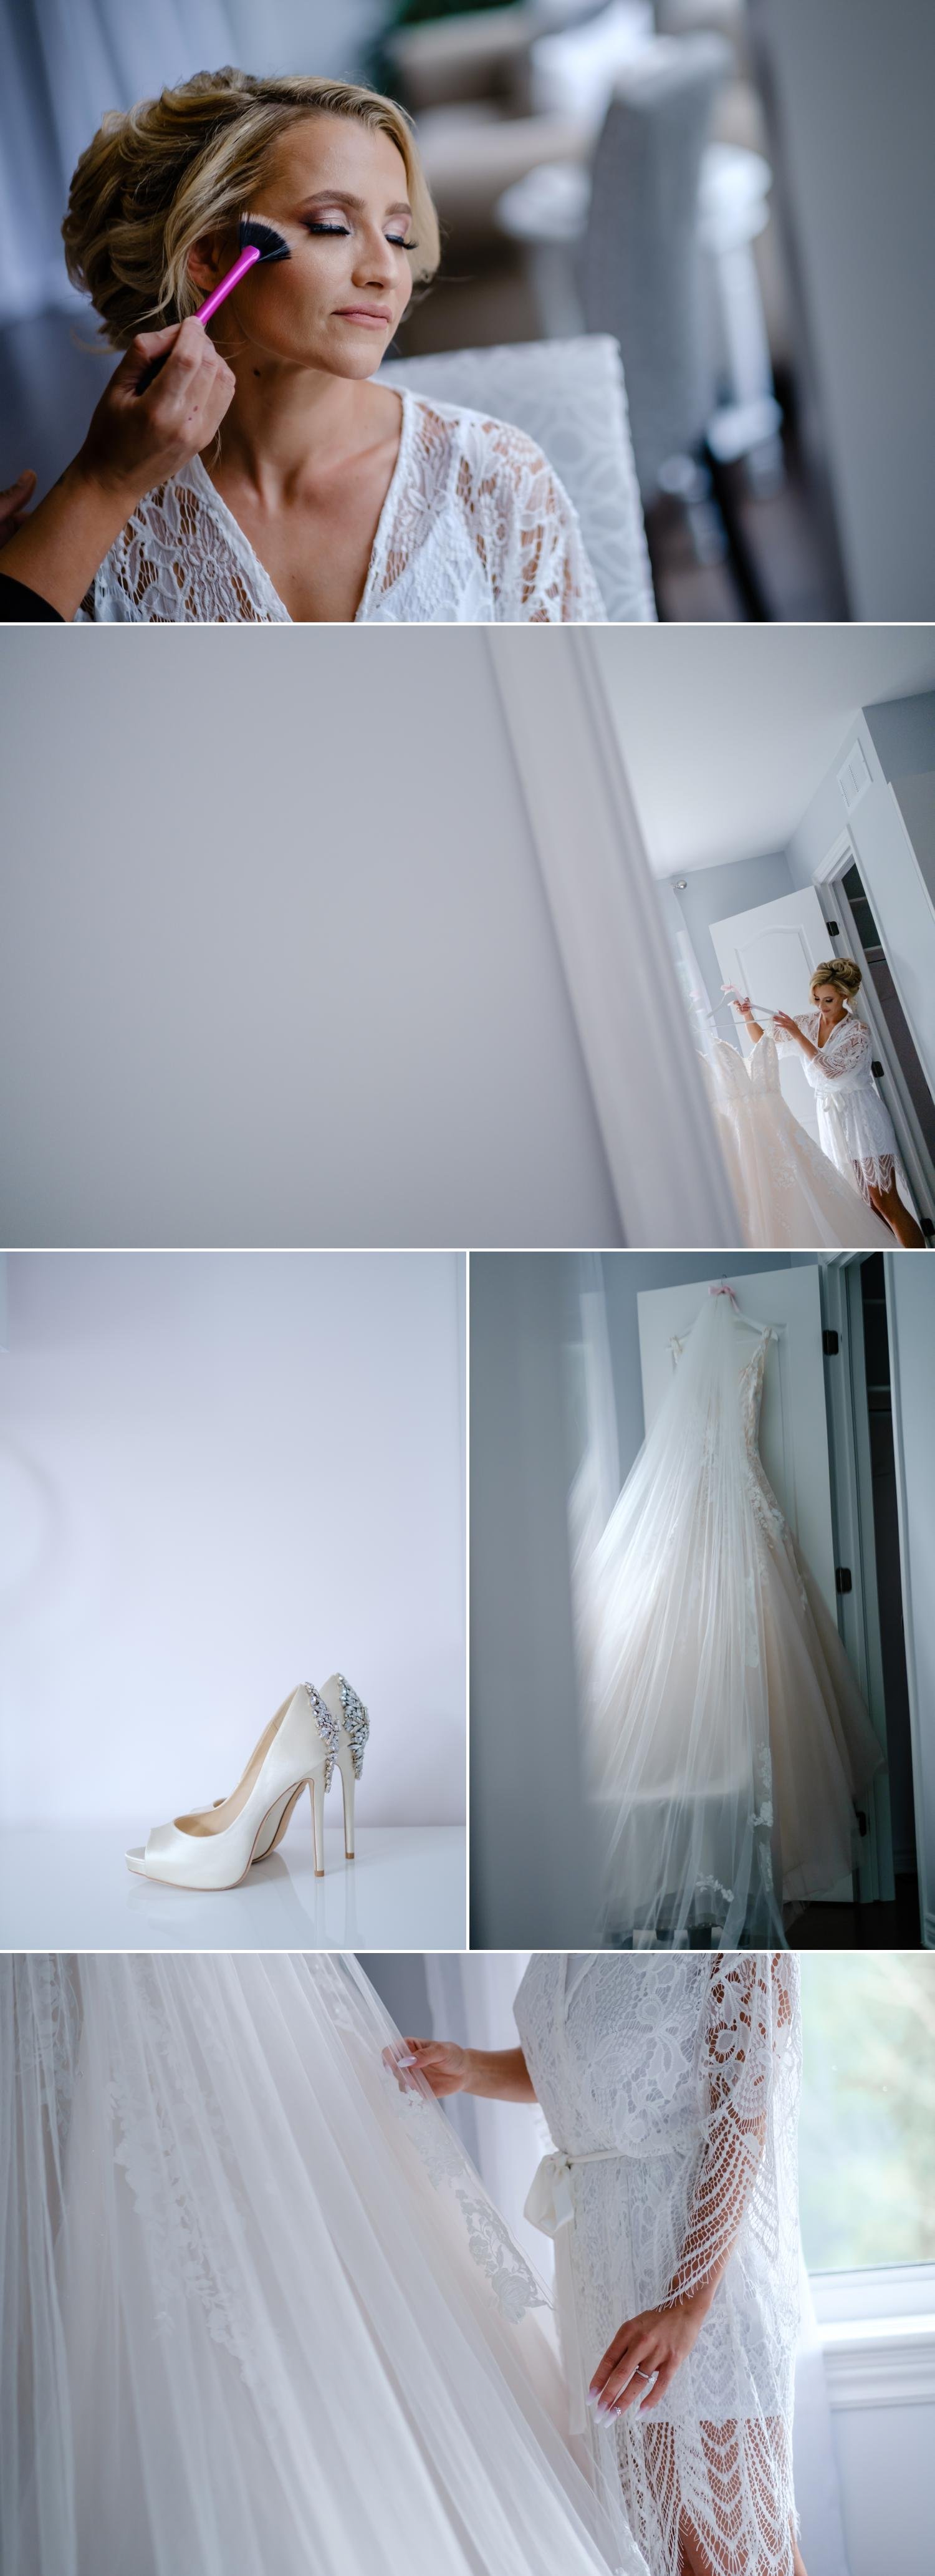 wedding photos of a bride getting ready